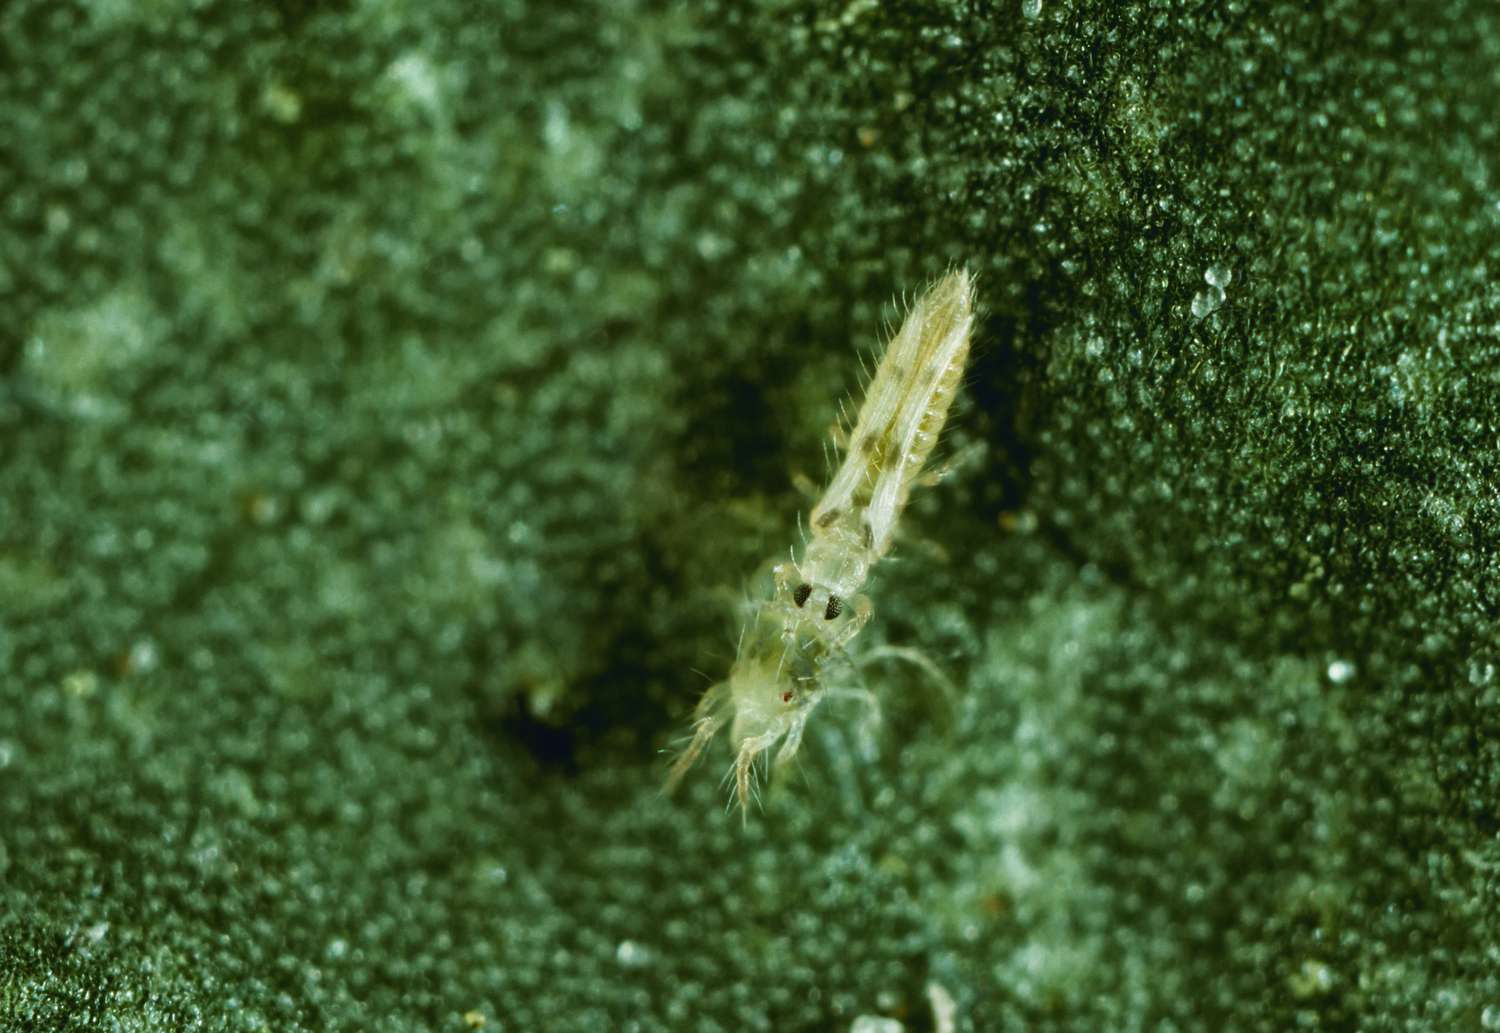 Landwirtschaft - Sechsfleckiger Thrips (Scolothrips sexmaculatus), der eine Spinnmilbe verschlingt (10X).